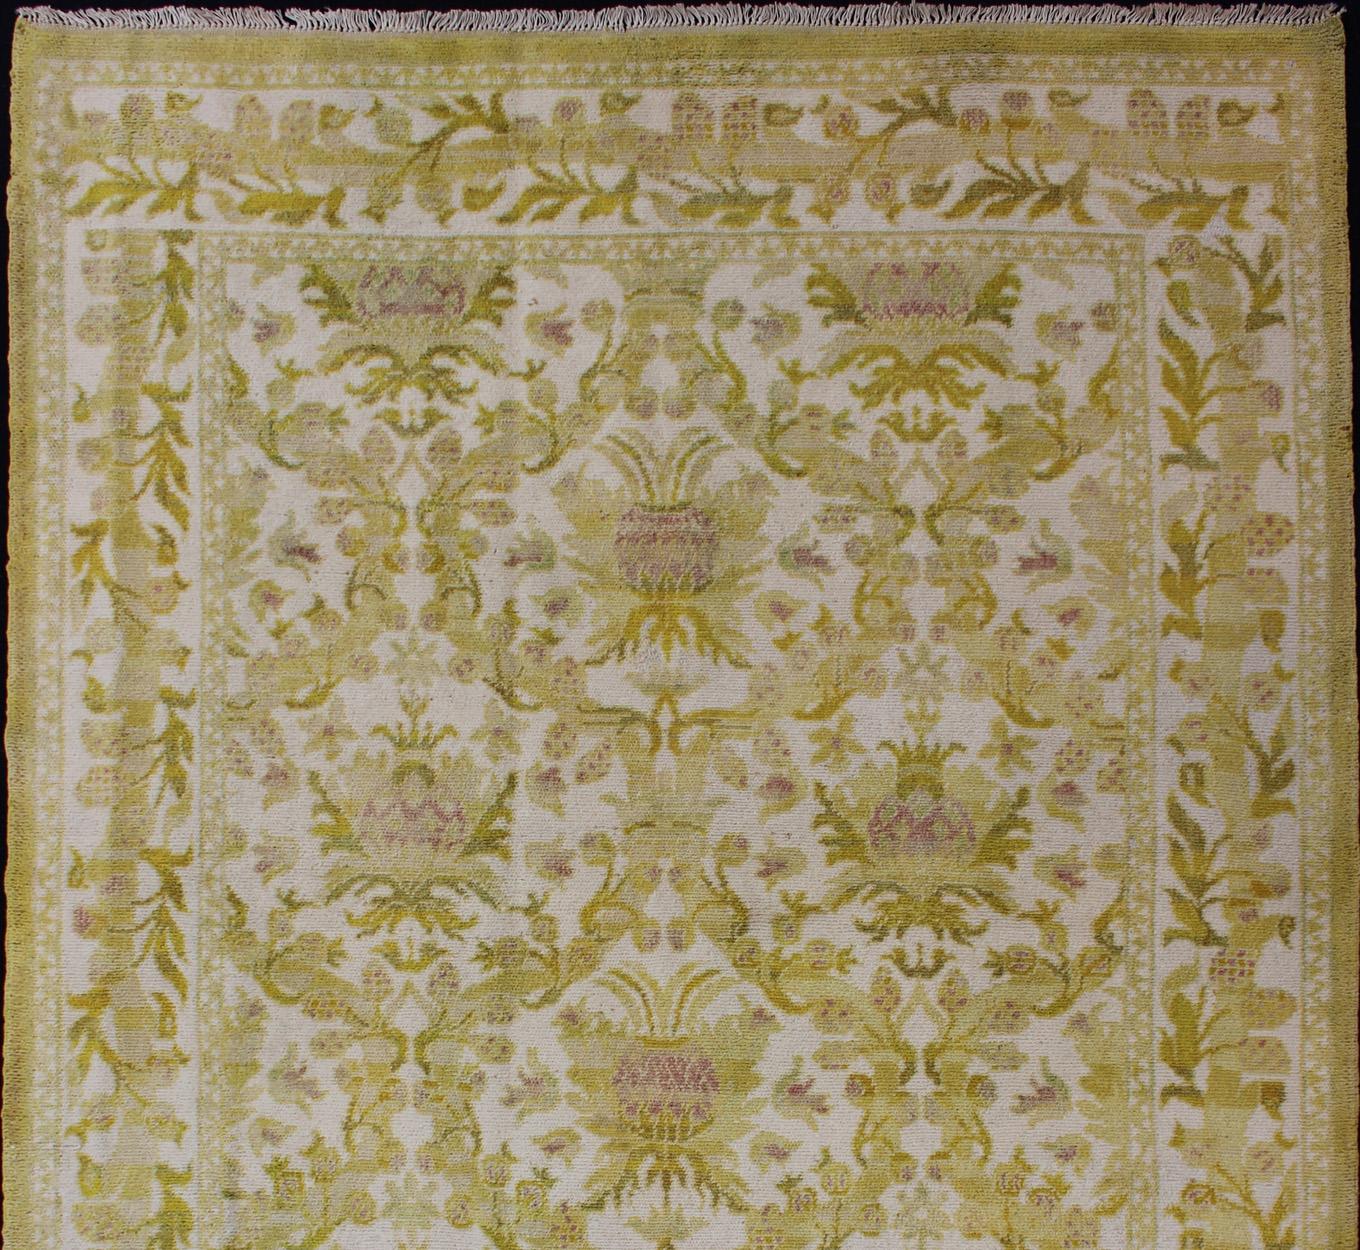 Eleganter spanischer Teppich mit floralem Muster in Gold-Grün, Säure-Grün und Weiß. Teppich S12-1207, Herkunftsland / Art: Spanien / Kunsthandwerk, um 1930

Dieser elegante alte spanische Teppich (um 1950) ist der stolze Erbe einer langen Tradition